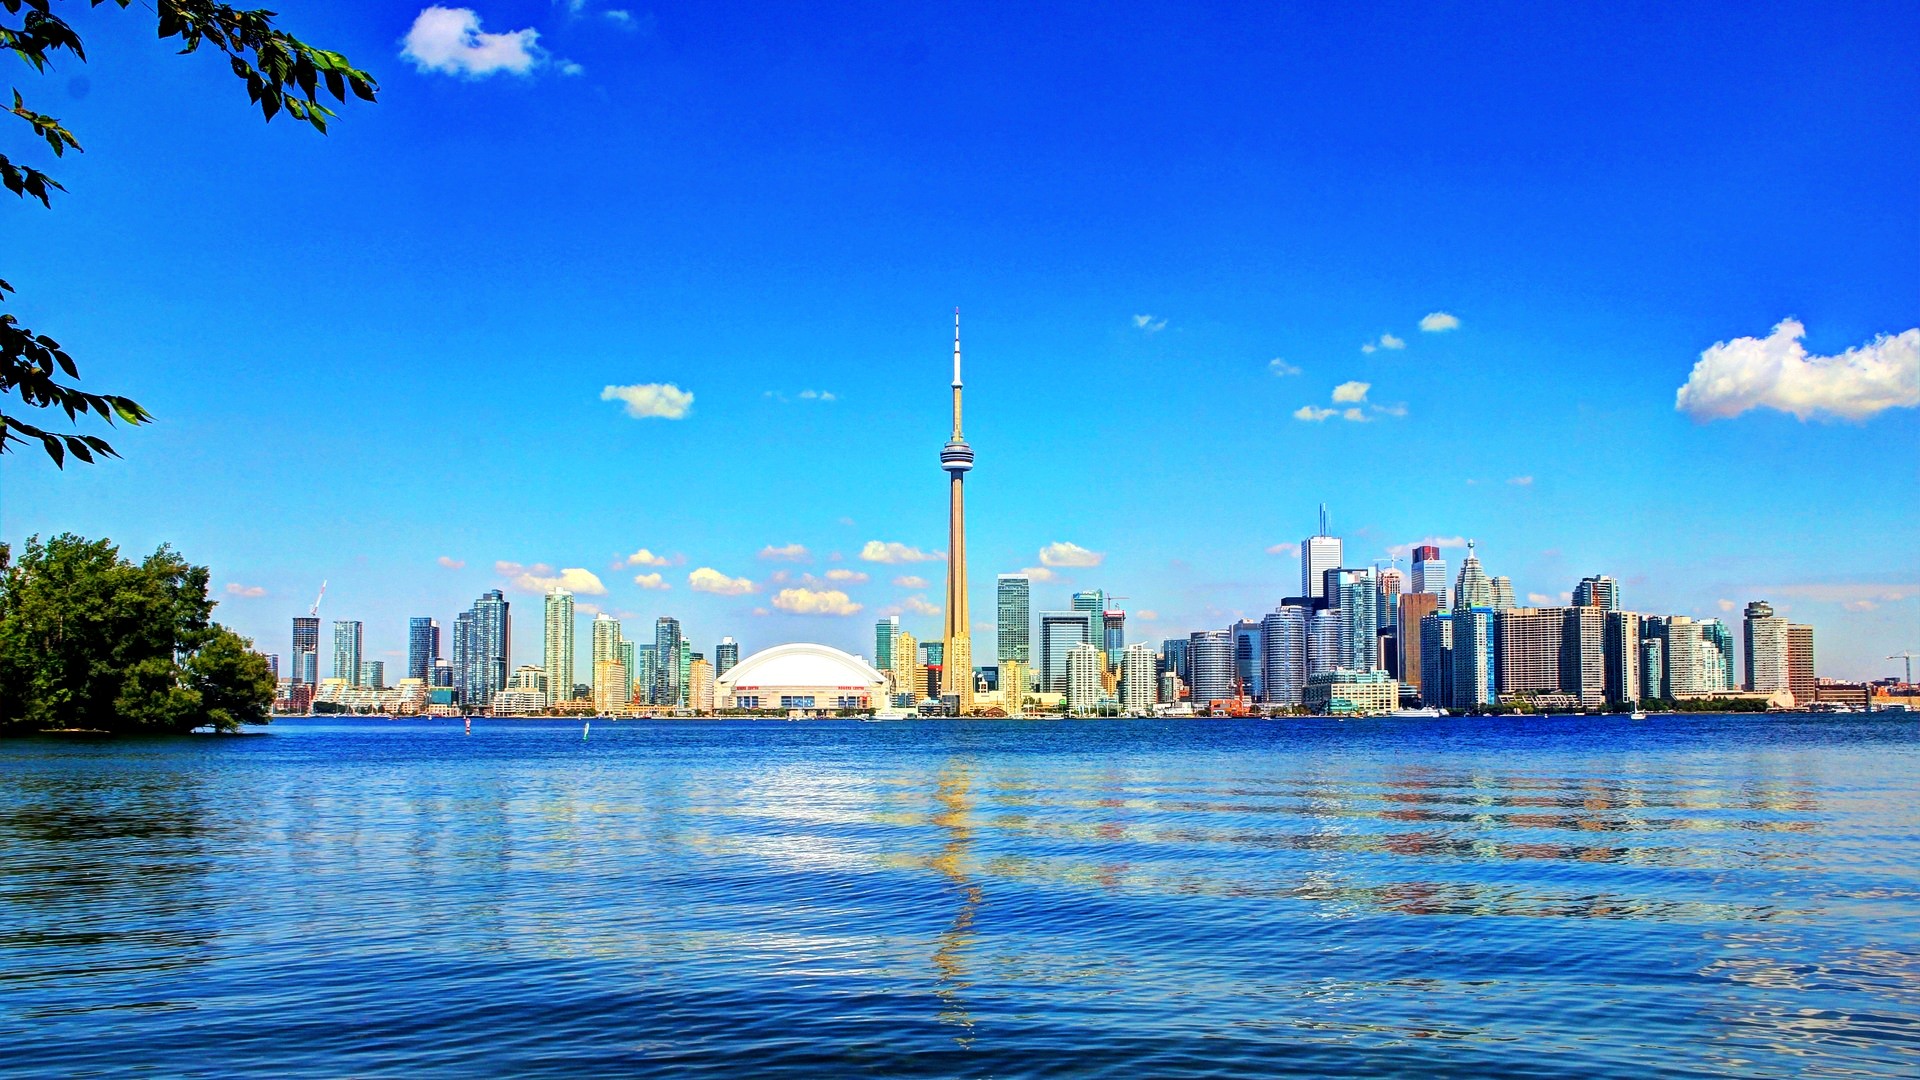 تور کانادا با پرواز مستقیم و اقامت 12 روزه در بهترین هتل های کشور کانادا